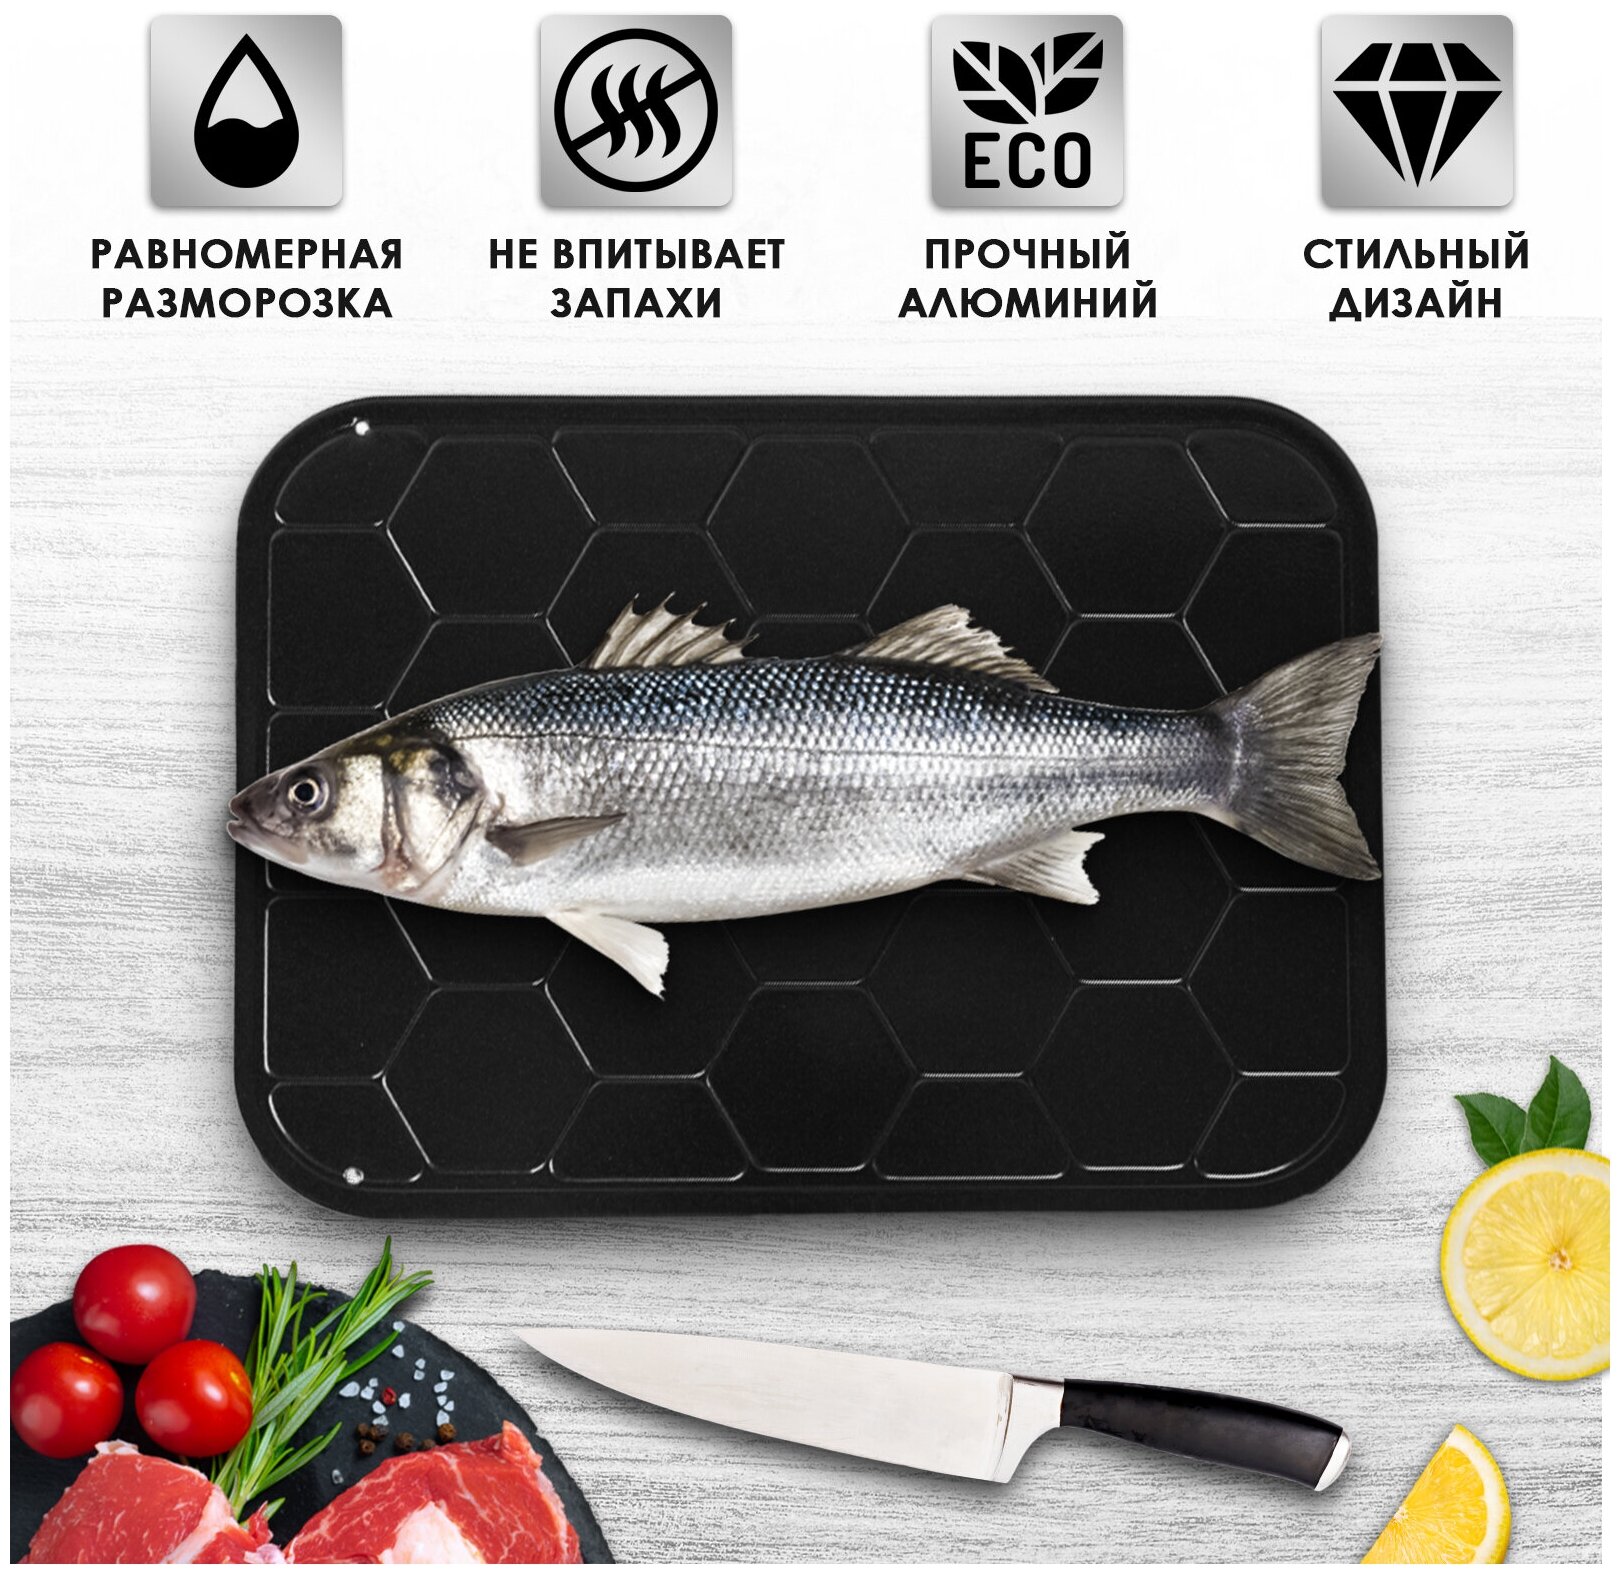 Доска для разморозки мяса и рыбы, цвет черный, 23х16,5 см, Kitchen Angel KA-BRD-02